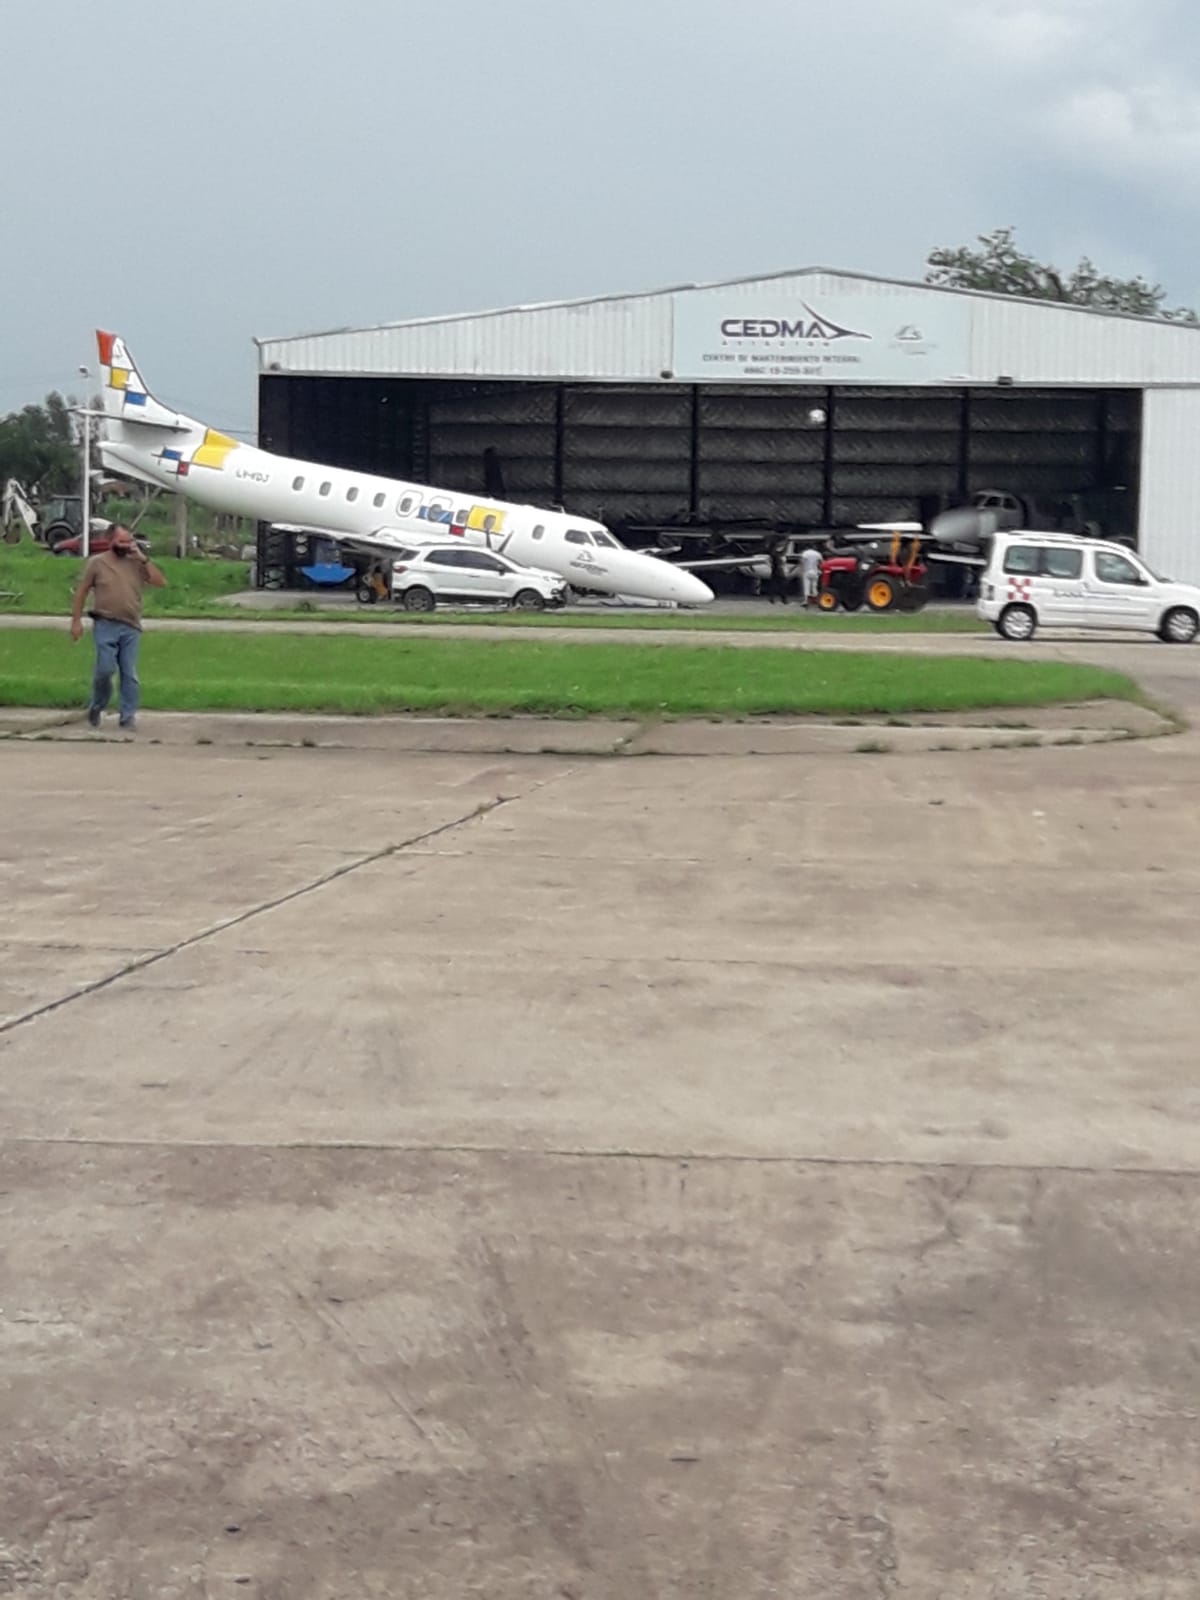 Un avió aplastó a un mecánico en un hangar del aeropuerto de Morón